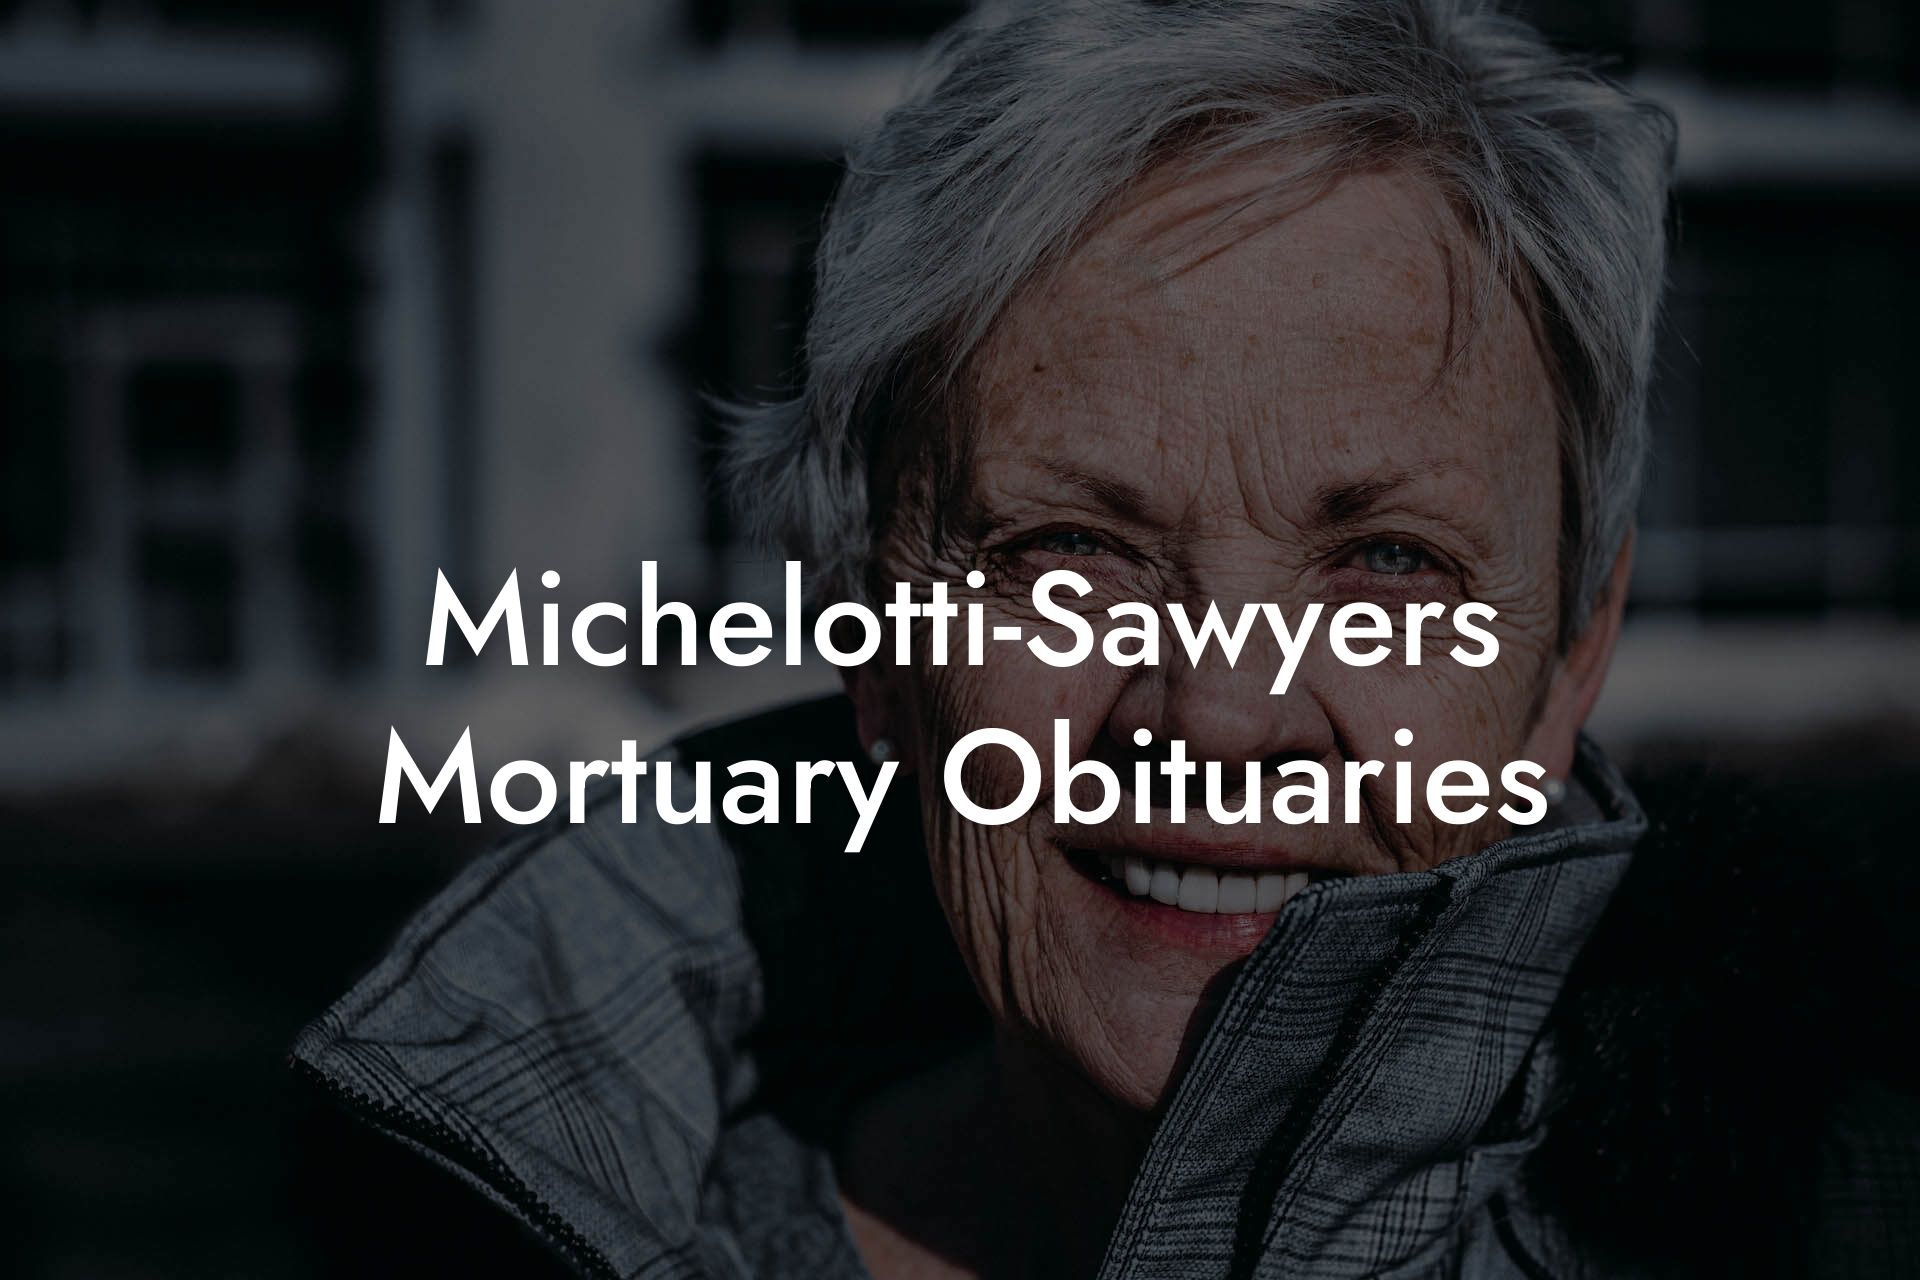 Michelotti-Sawyers Mortuary Obituaries